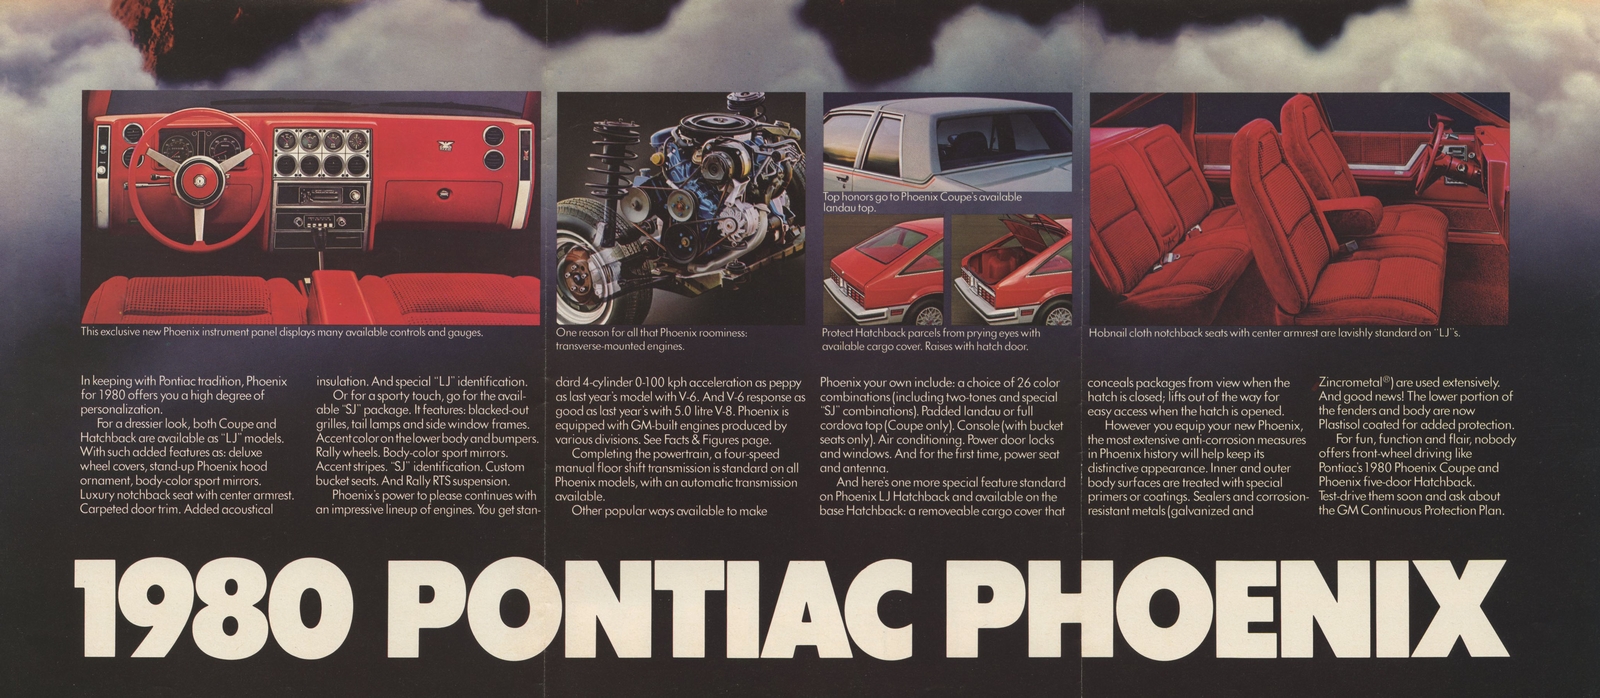 n_1980 Pontiac Phoenix (Cdn)-09-10-11.jpg